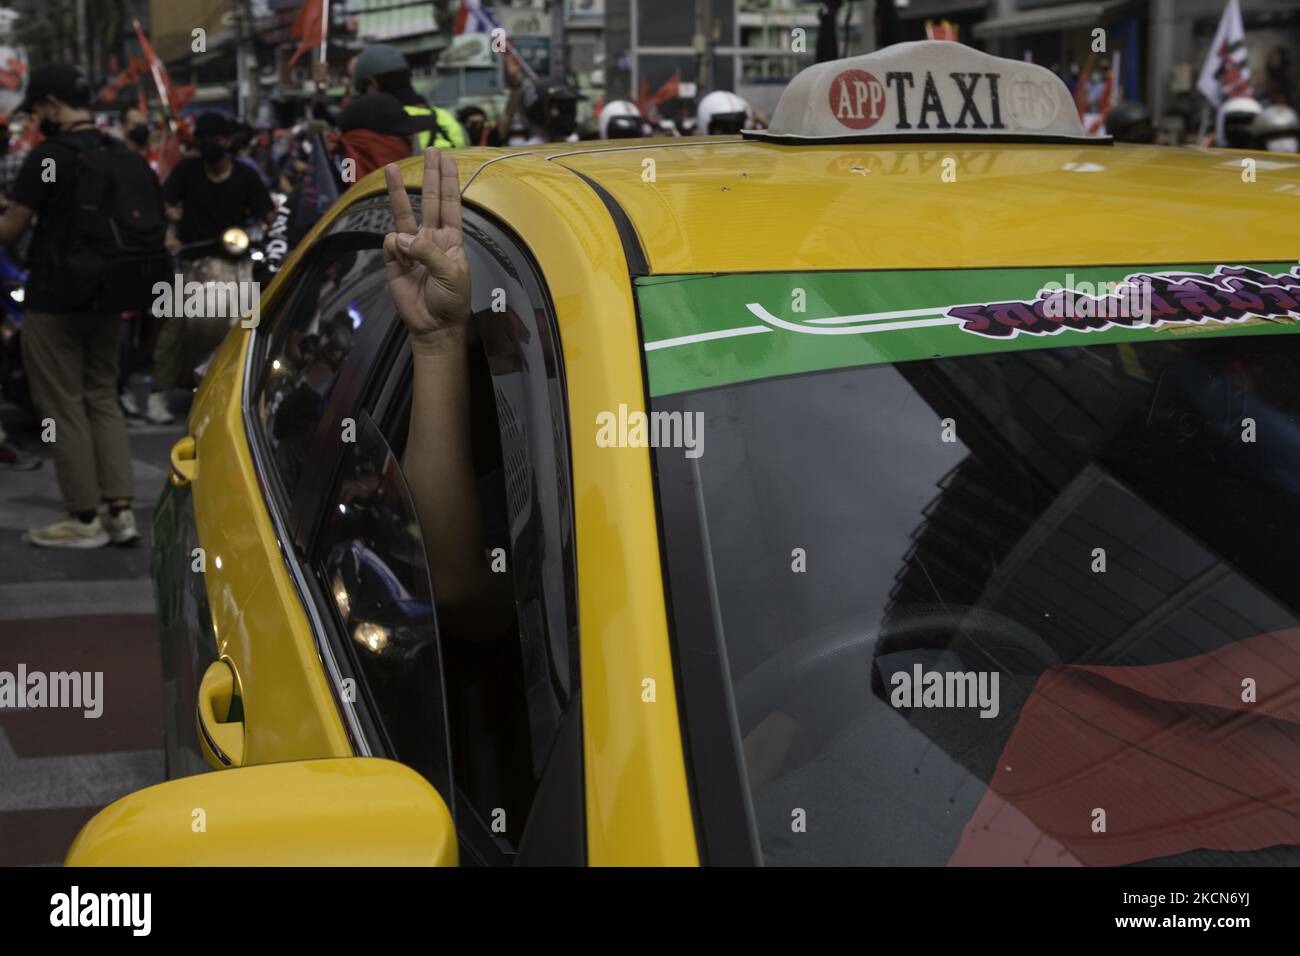 Der Taxifahrer hielt das drei-Finger-Symbol hoch, bevor er am Sonntag bei Asoke-Intersetion eine Anti-Putsch- und Anti-Regierungskundgebung anstoss. Regierungsfeindliche Demonstranten in Bangkok, Thailand, am 19. September 2021, während einer Demonstration anlässlich des 15-jährigen Jubiläums seit der militärischen Übernahme von 2006 in Bangkok am 19. September 2021, als sie den Rücktritt der aktuellen Regierung wegen ihres Umgangs mit der Coronavirus-Krise von Covid-19 forderten. (Foto von Atiwat Silpamethanont/NurPhoto) Stockfoto